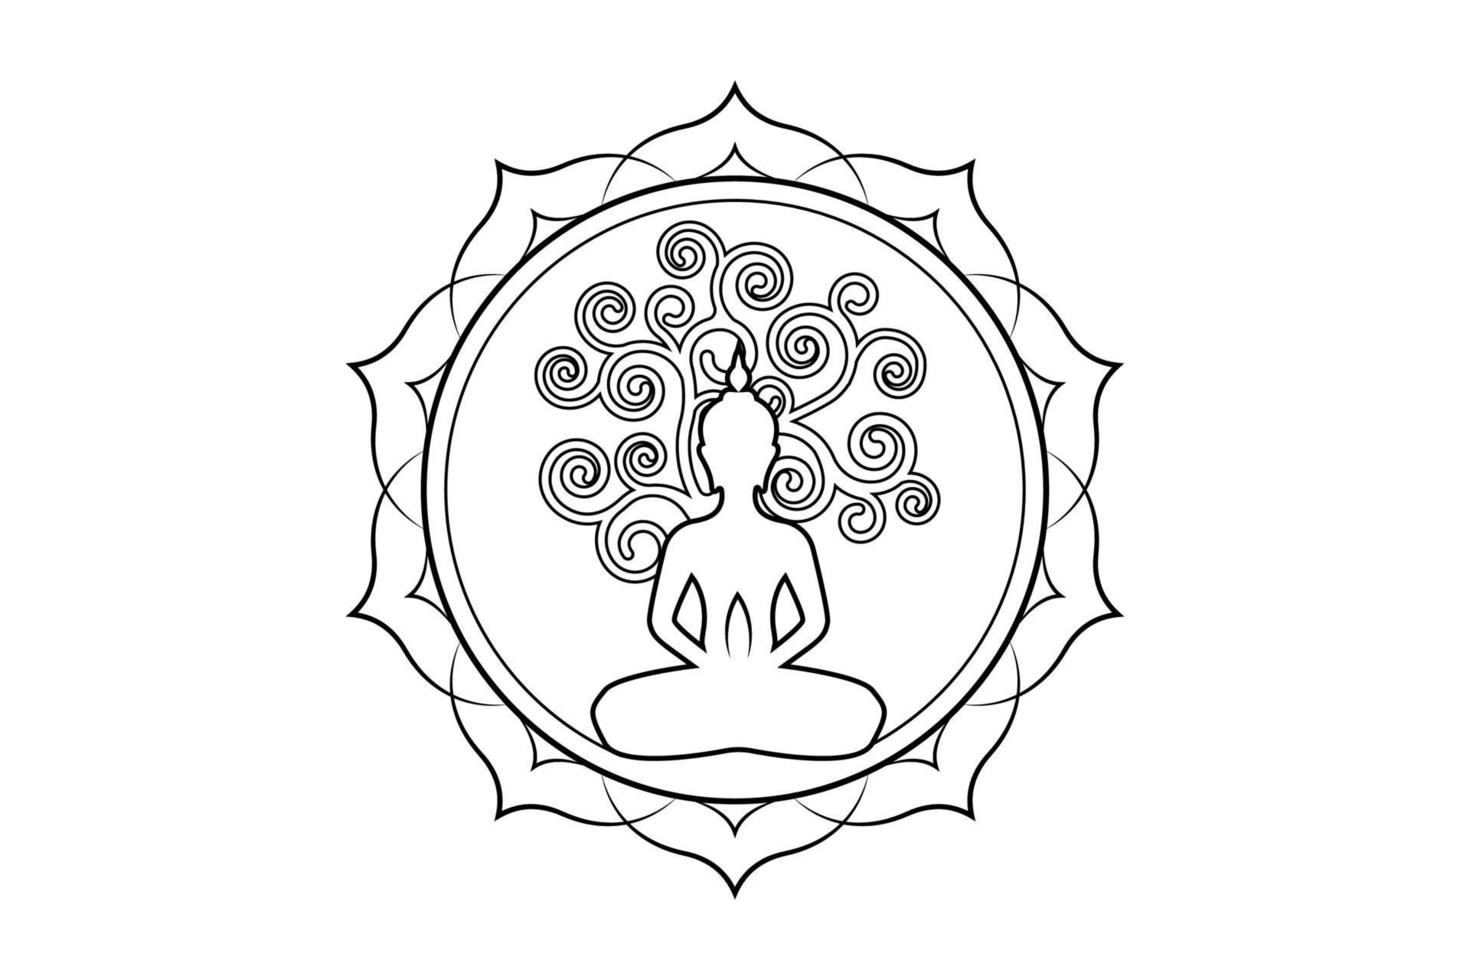 dia de visakha puja, estátua de Buda e árvore bodhi no modelo de logotipo de lótus sagrado. árvore sagrada, ficus religiosa, conceito da árvore da vida. vetor isolado em fundo branco